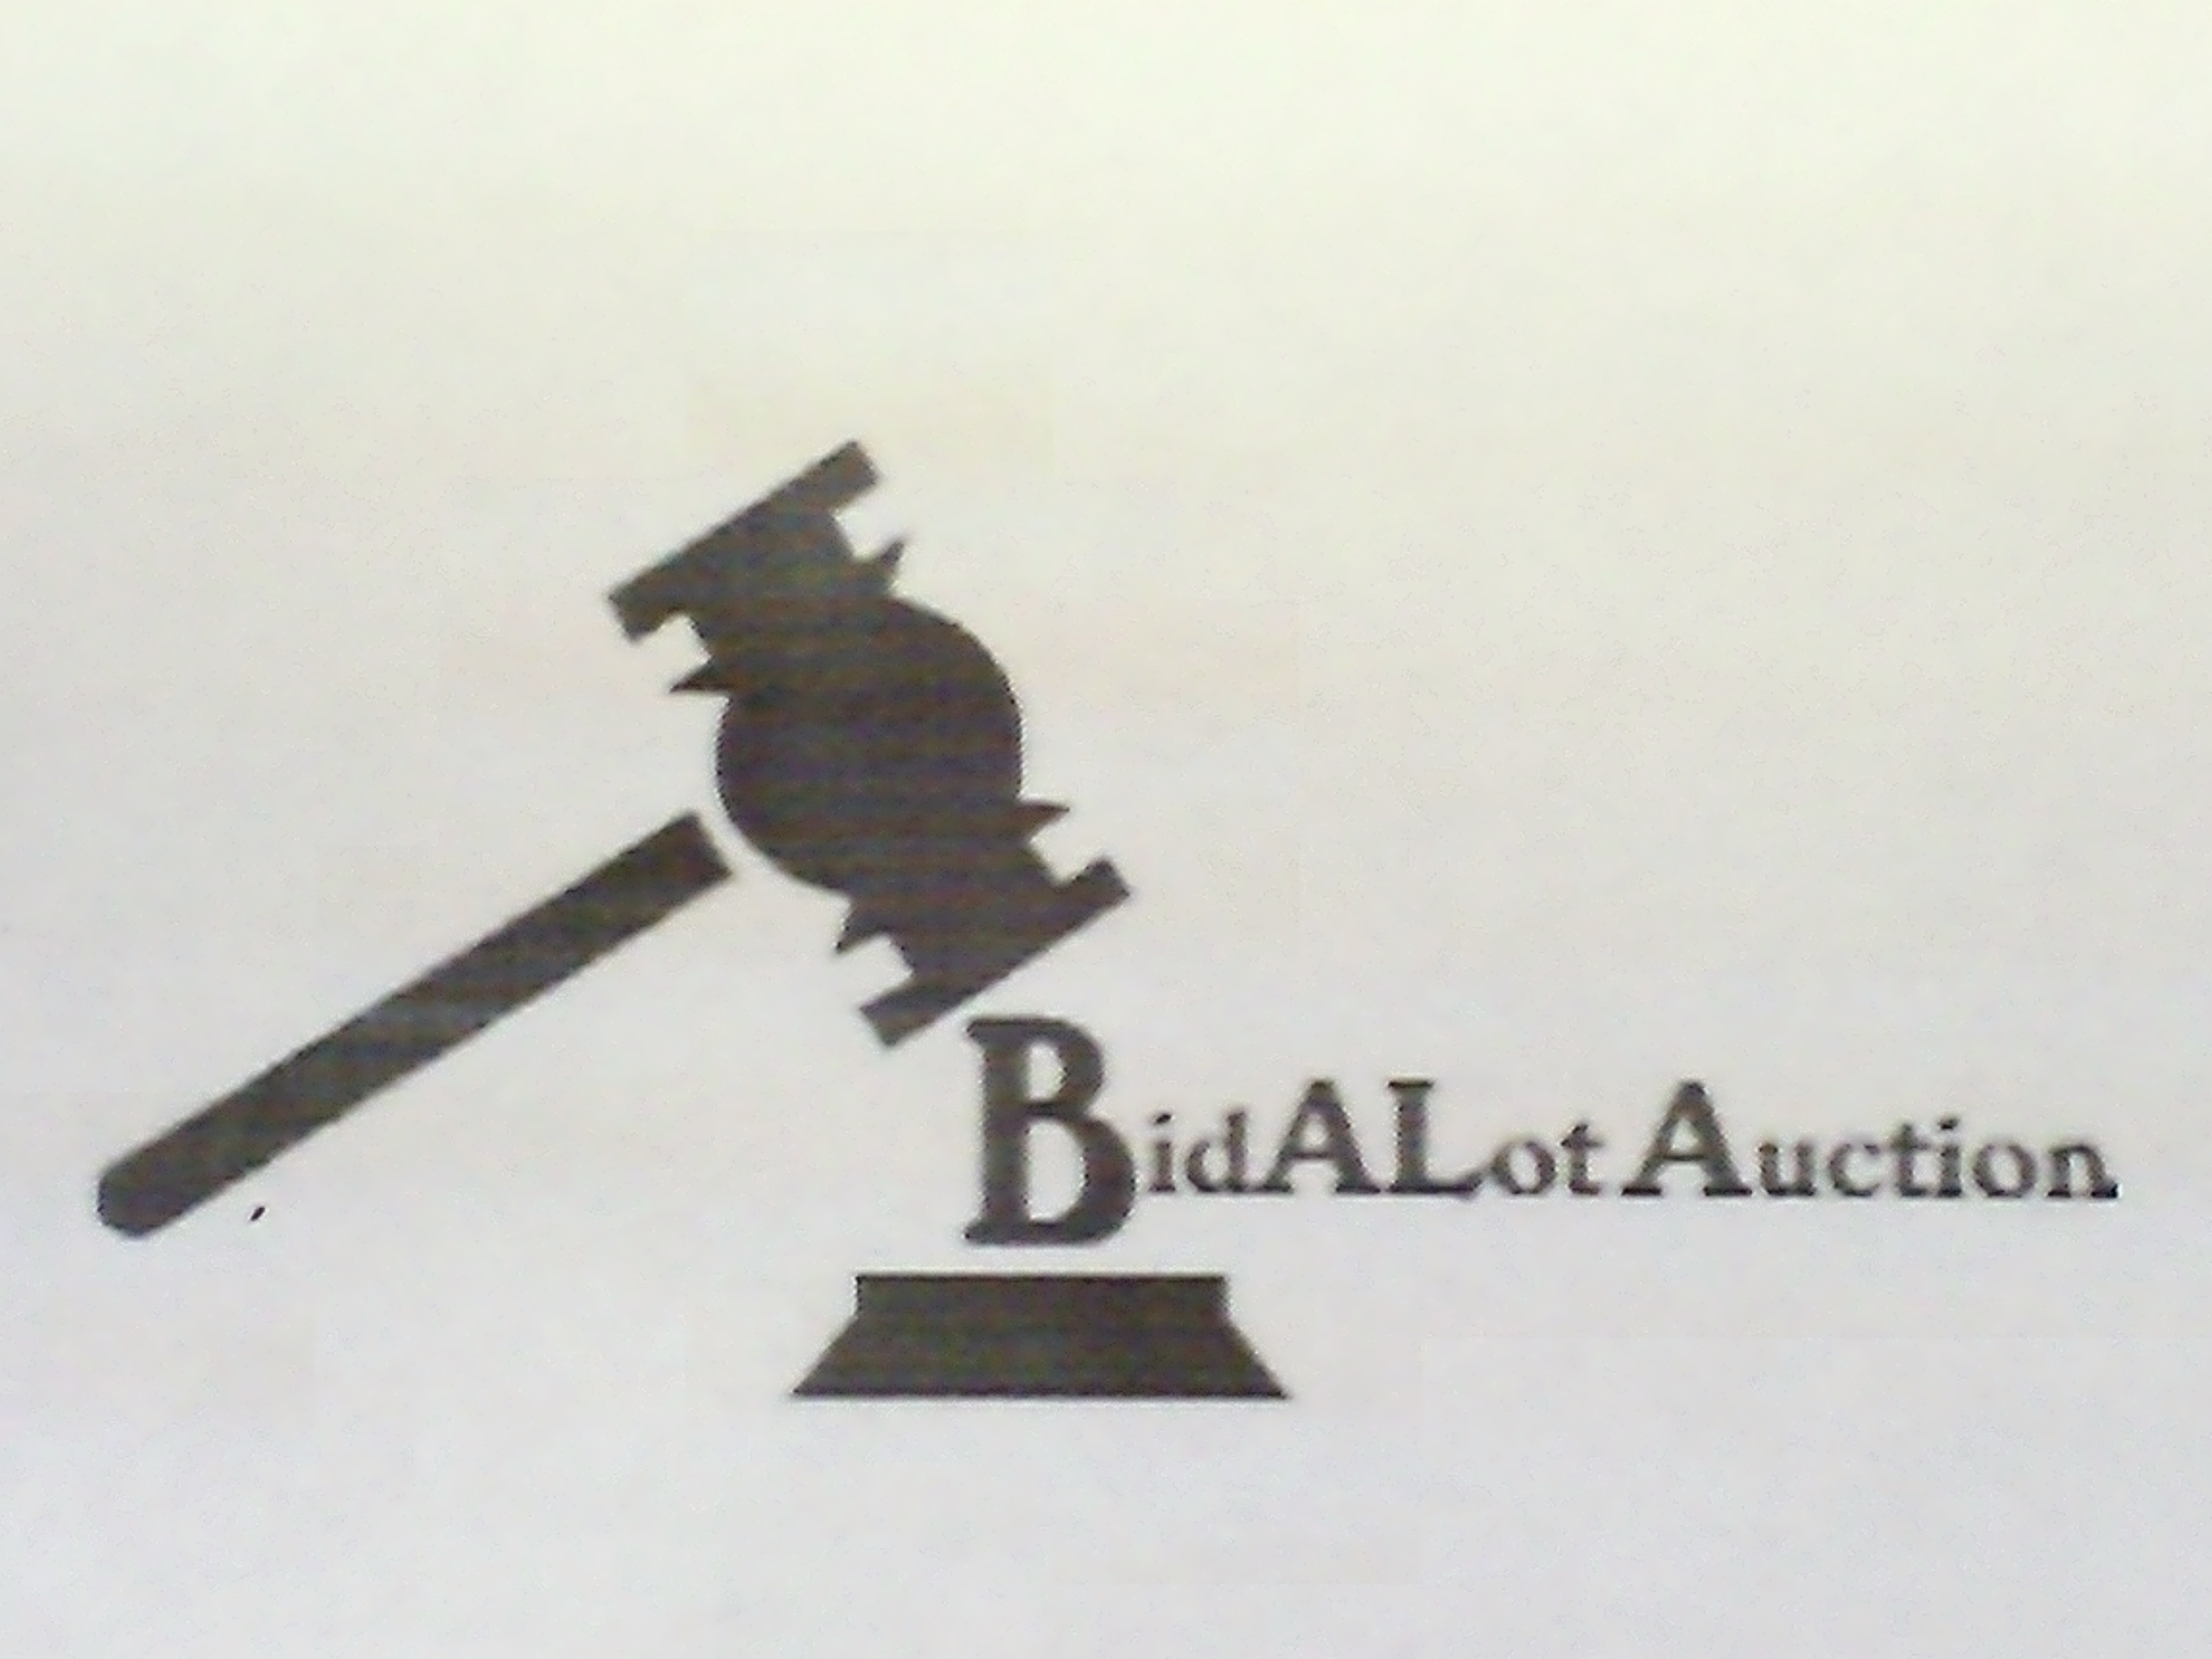 BIDALOT COIN AUCTION ONLINE MONDAY SEPT. 11TH AT 6:30 PM CST